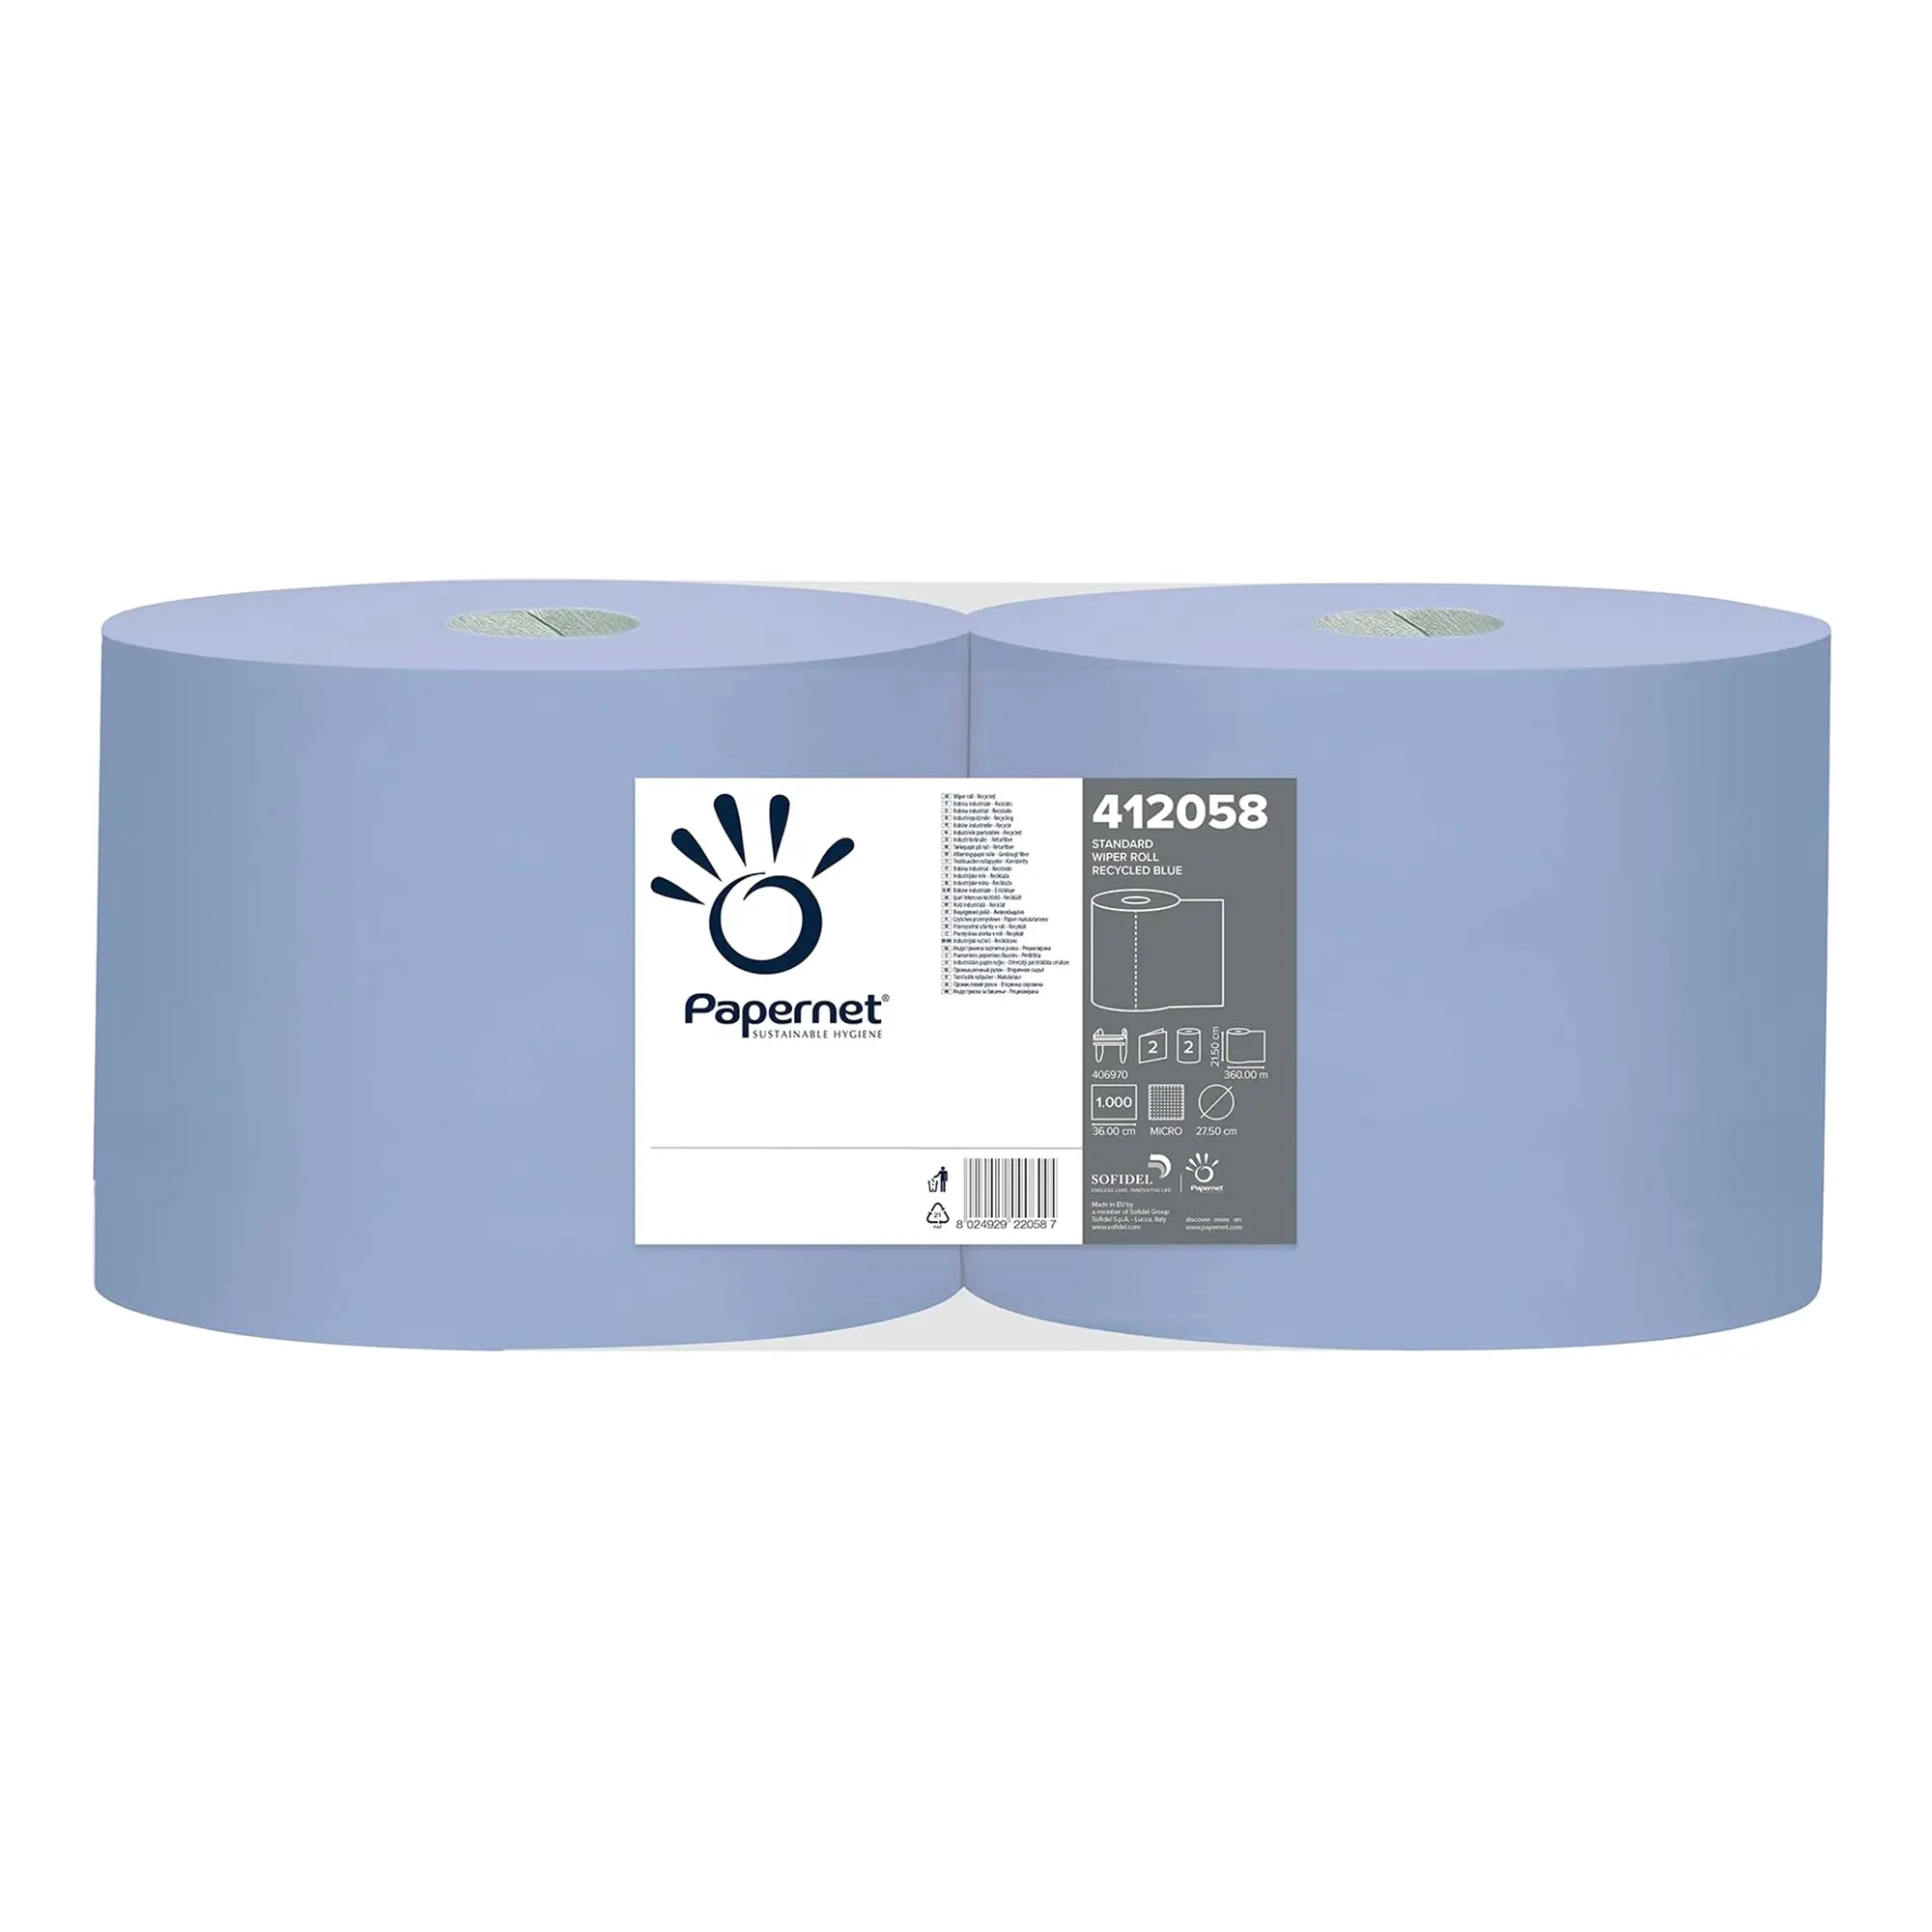 Papernet Industrieputztuchrollen blau 2-lagig, 21,5 cm breit, 1000 Tücher